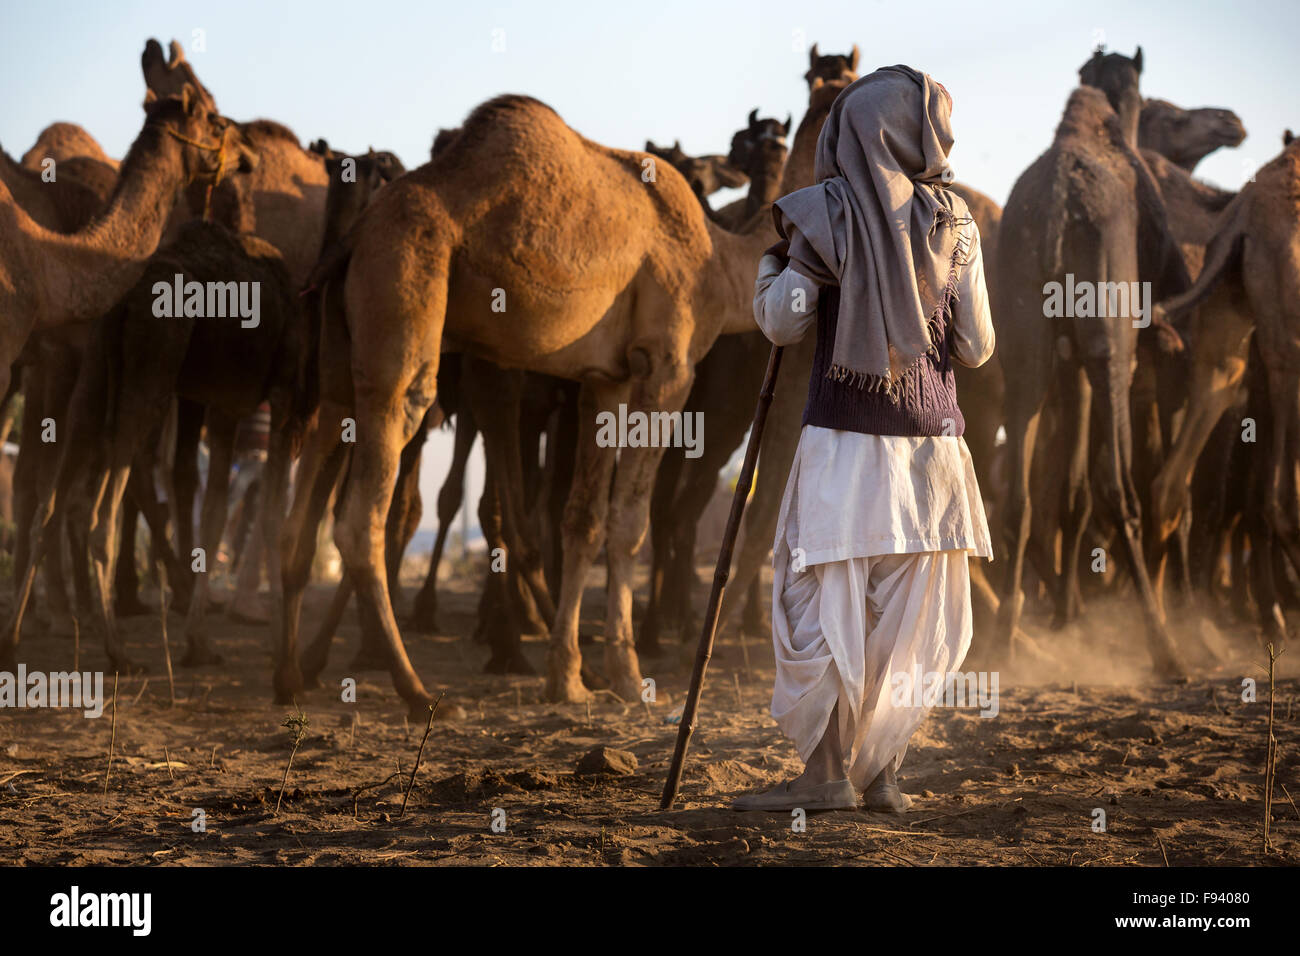 Ein Mann beobachtet seinen Kamelen bei der Pushkar Mela Camel fair, Pushkar, Rajasthan, Indien Stockfoto